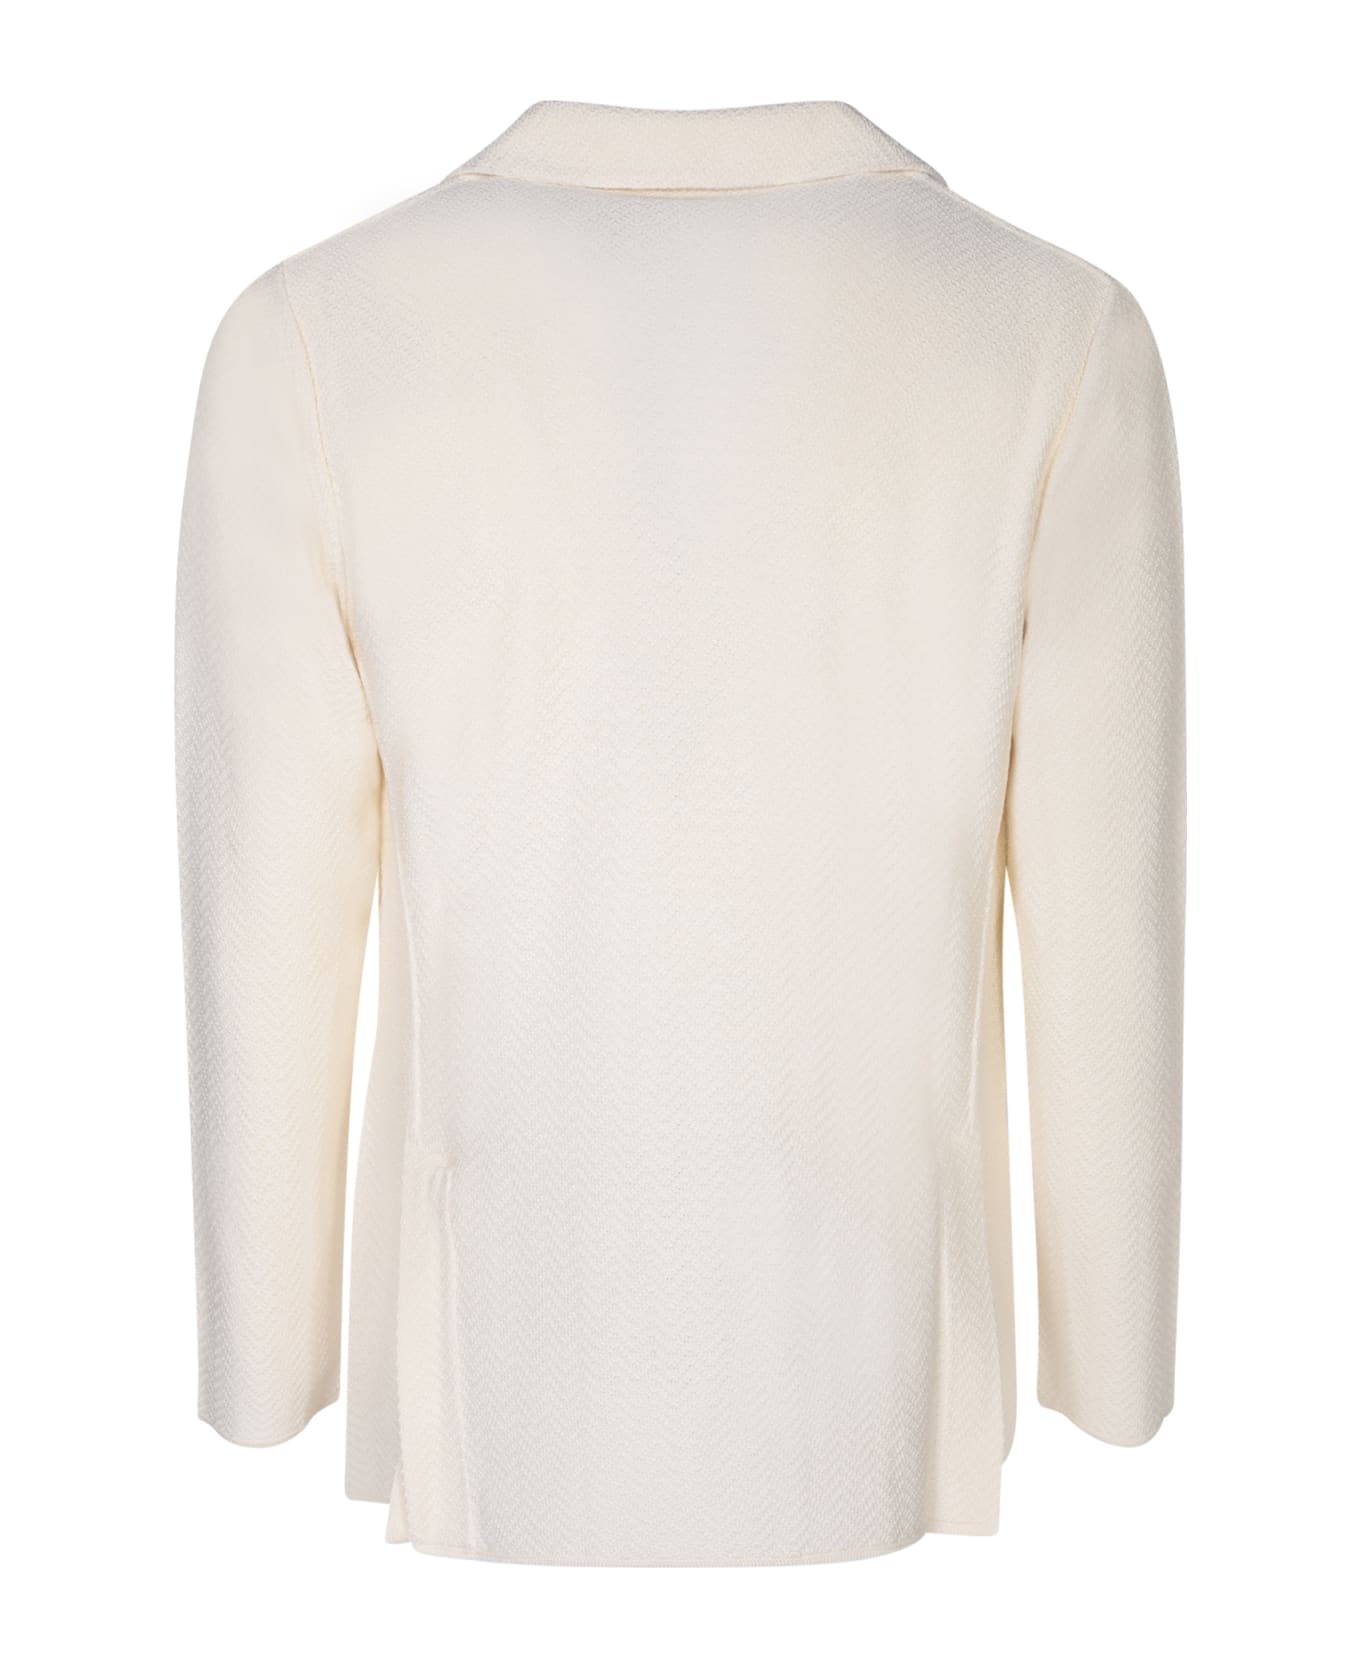 Lardini Herringbone Ivory Cardigan Style Jacket - White